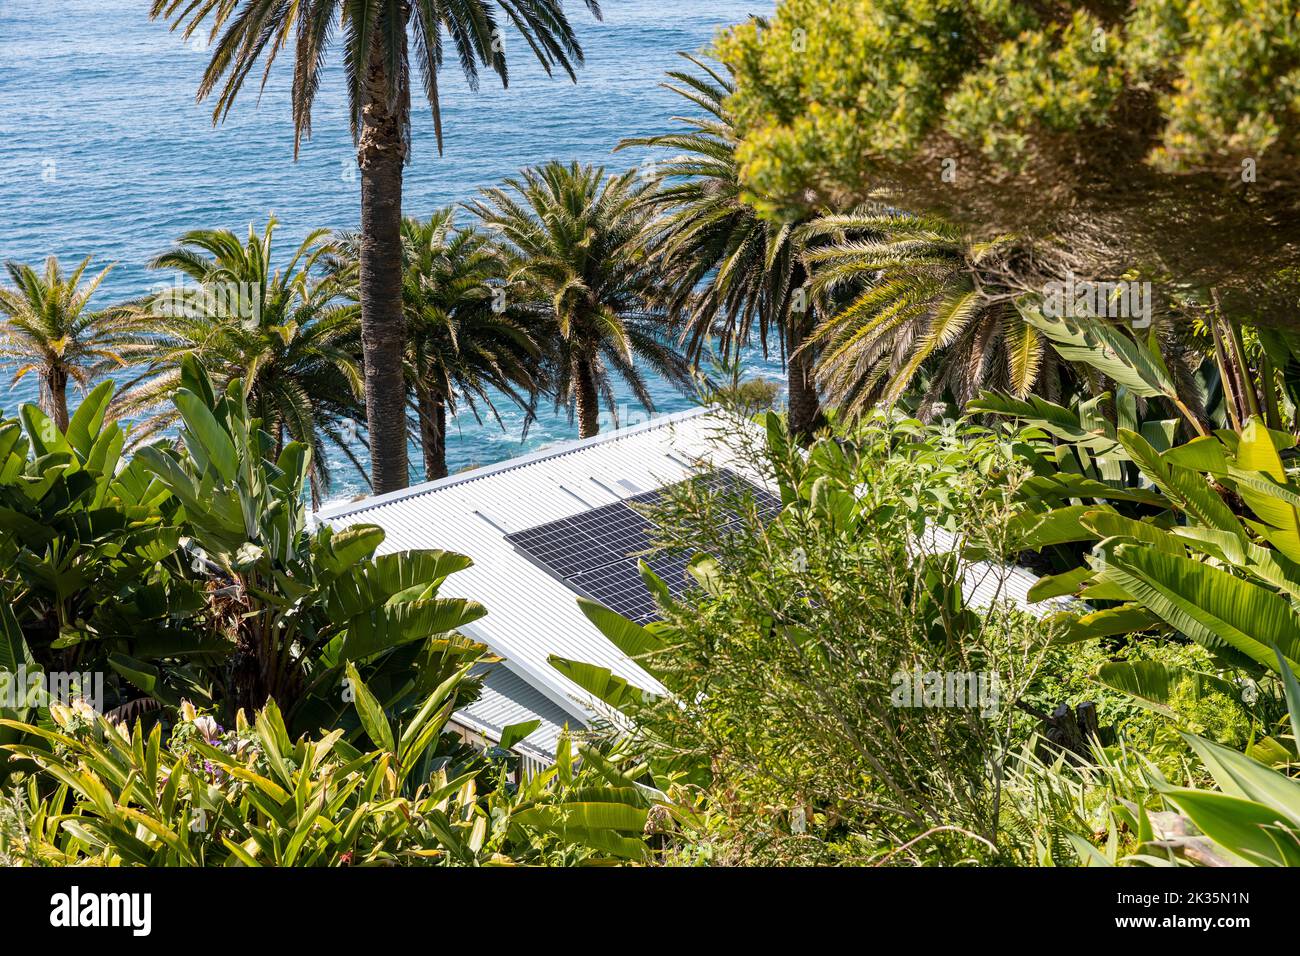 Pannelli solari su un tetto di una piccola casa Palm Beach a Sydney, con l'oceano sotto e grandi piante tropicali e palme che circondano i pannelli solari Foto Stock